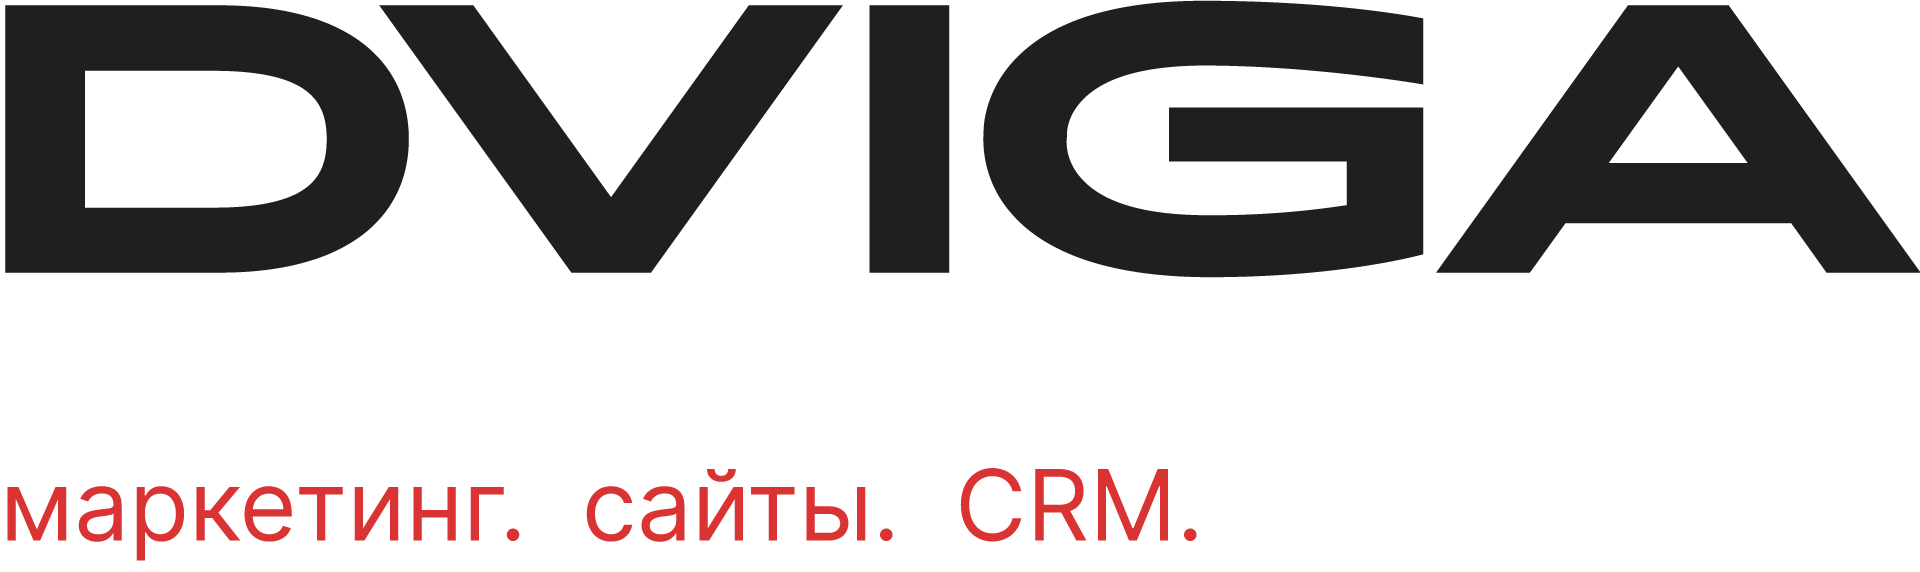 Маркетинговое агентство DVIGA